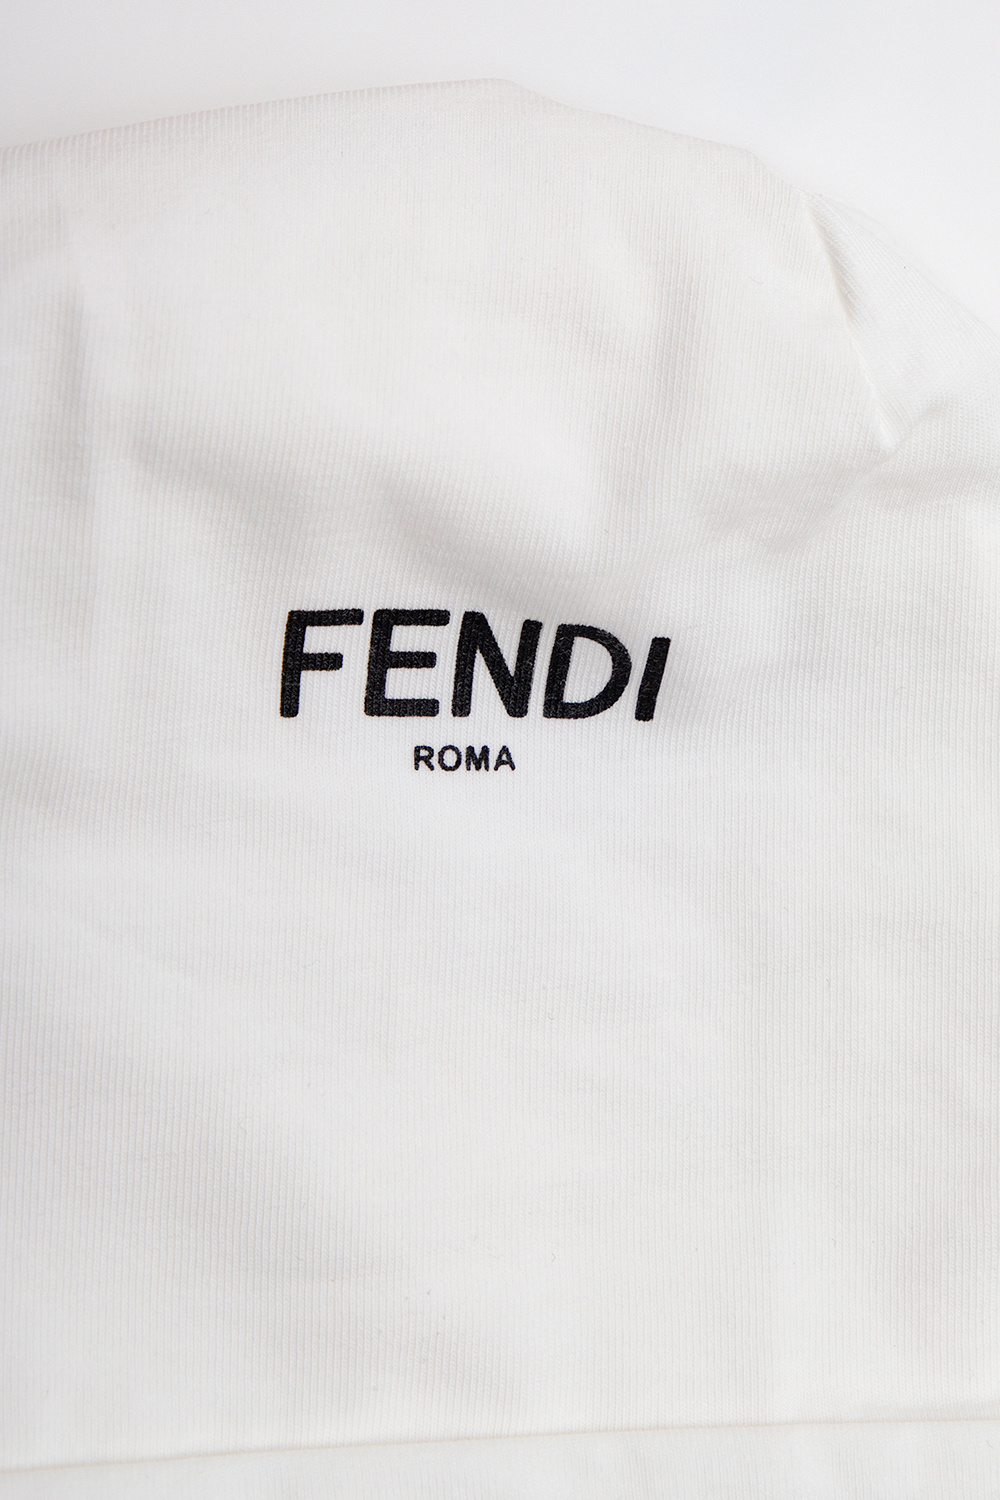 Fendi Kids denim jacket with logo fendi jacket